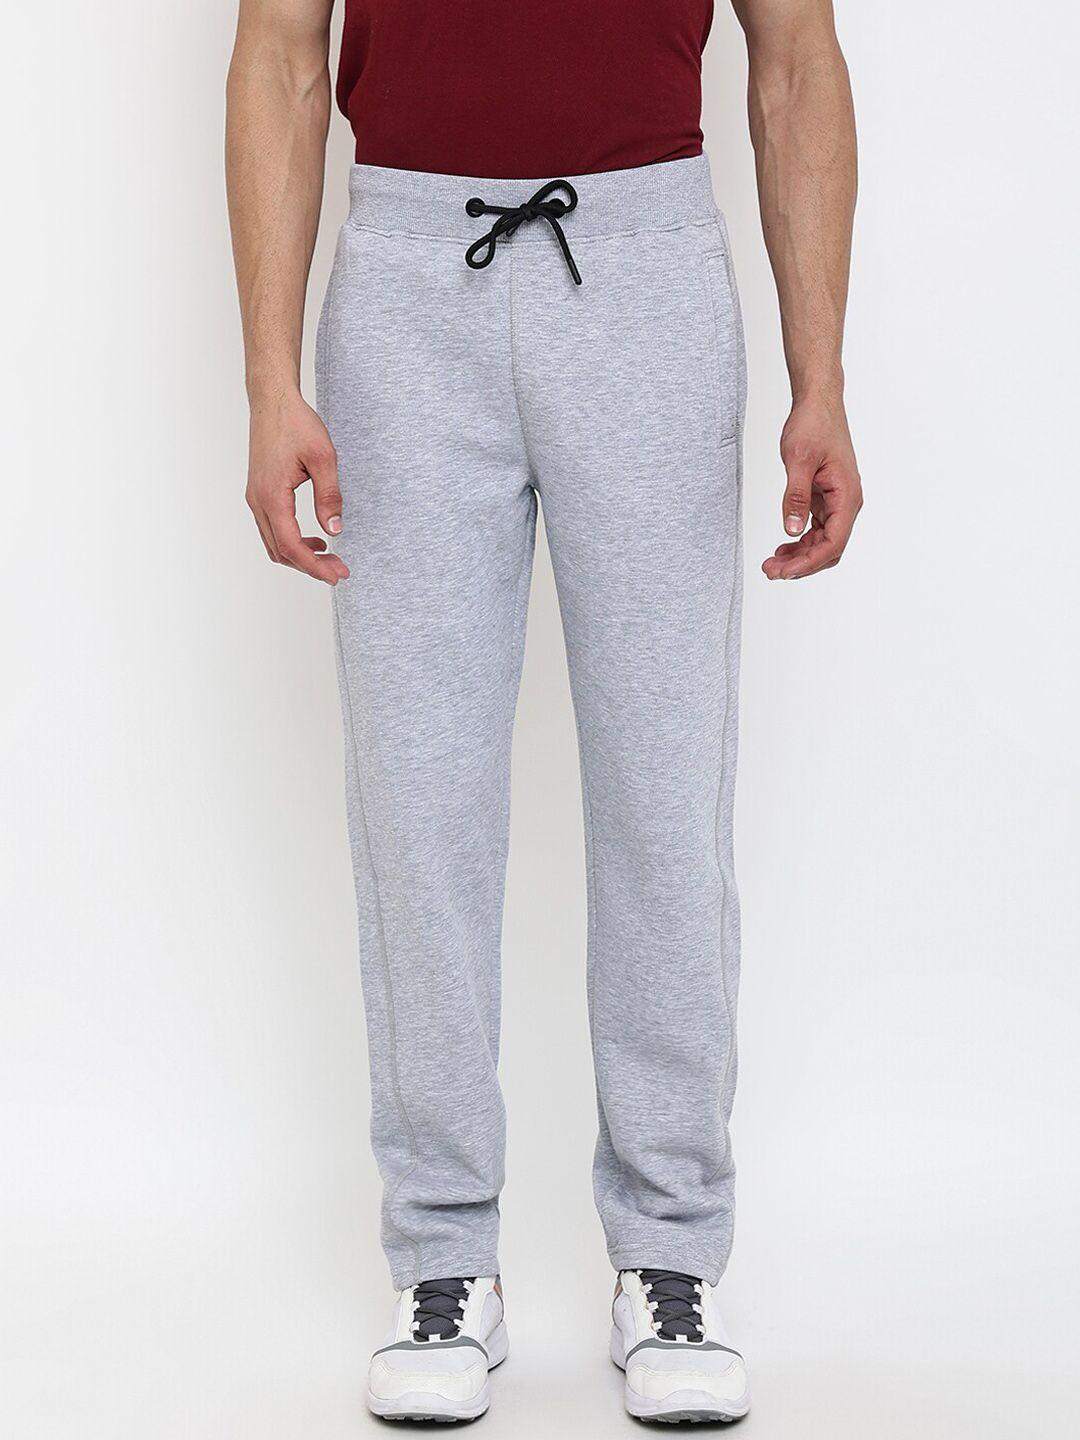 cantabil-men-grey-melange-solid-cotton-regular-fit-track-pants